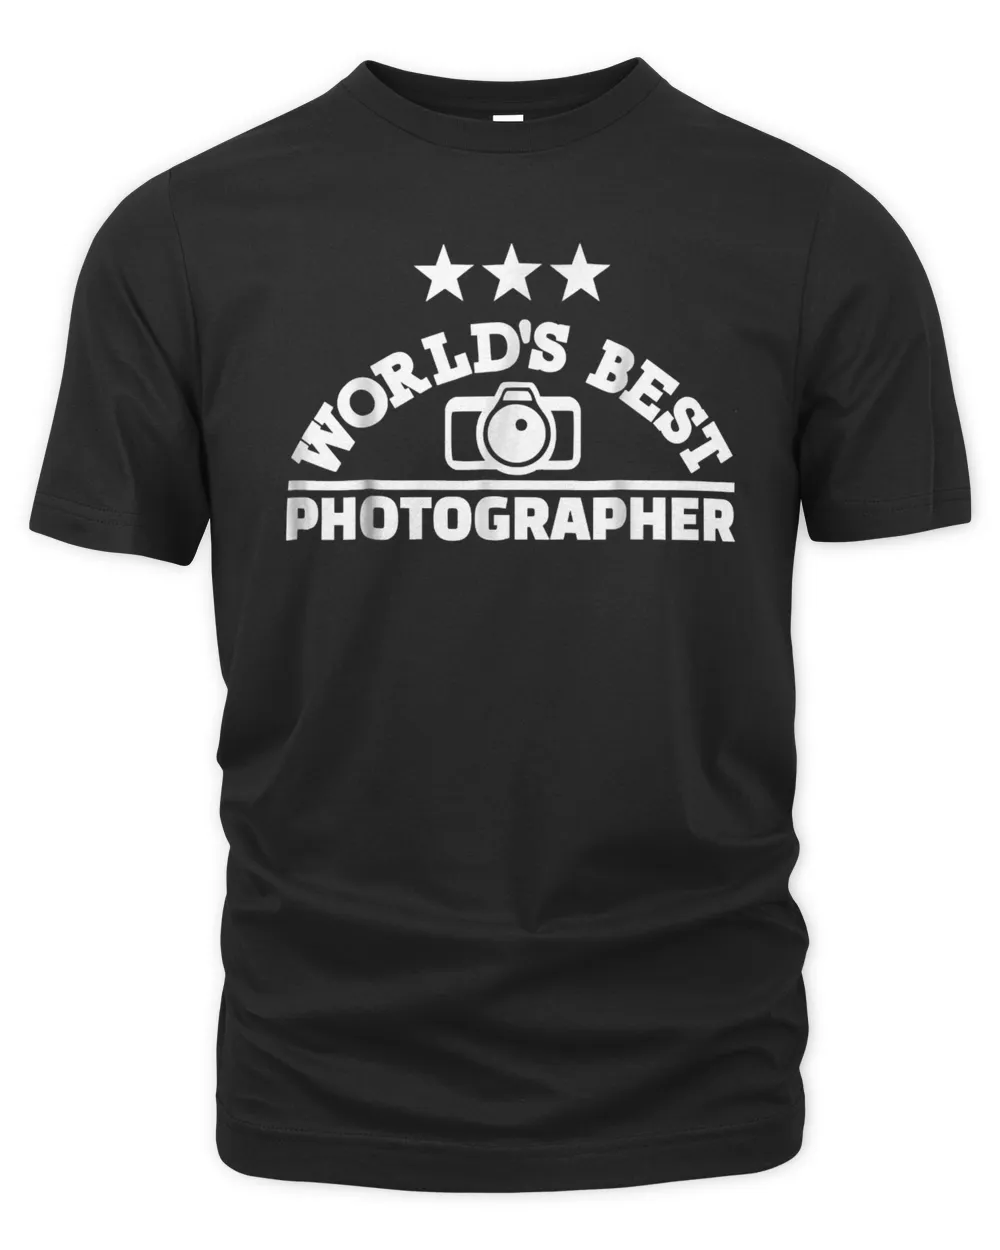 World's best photographer T-Shirt